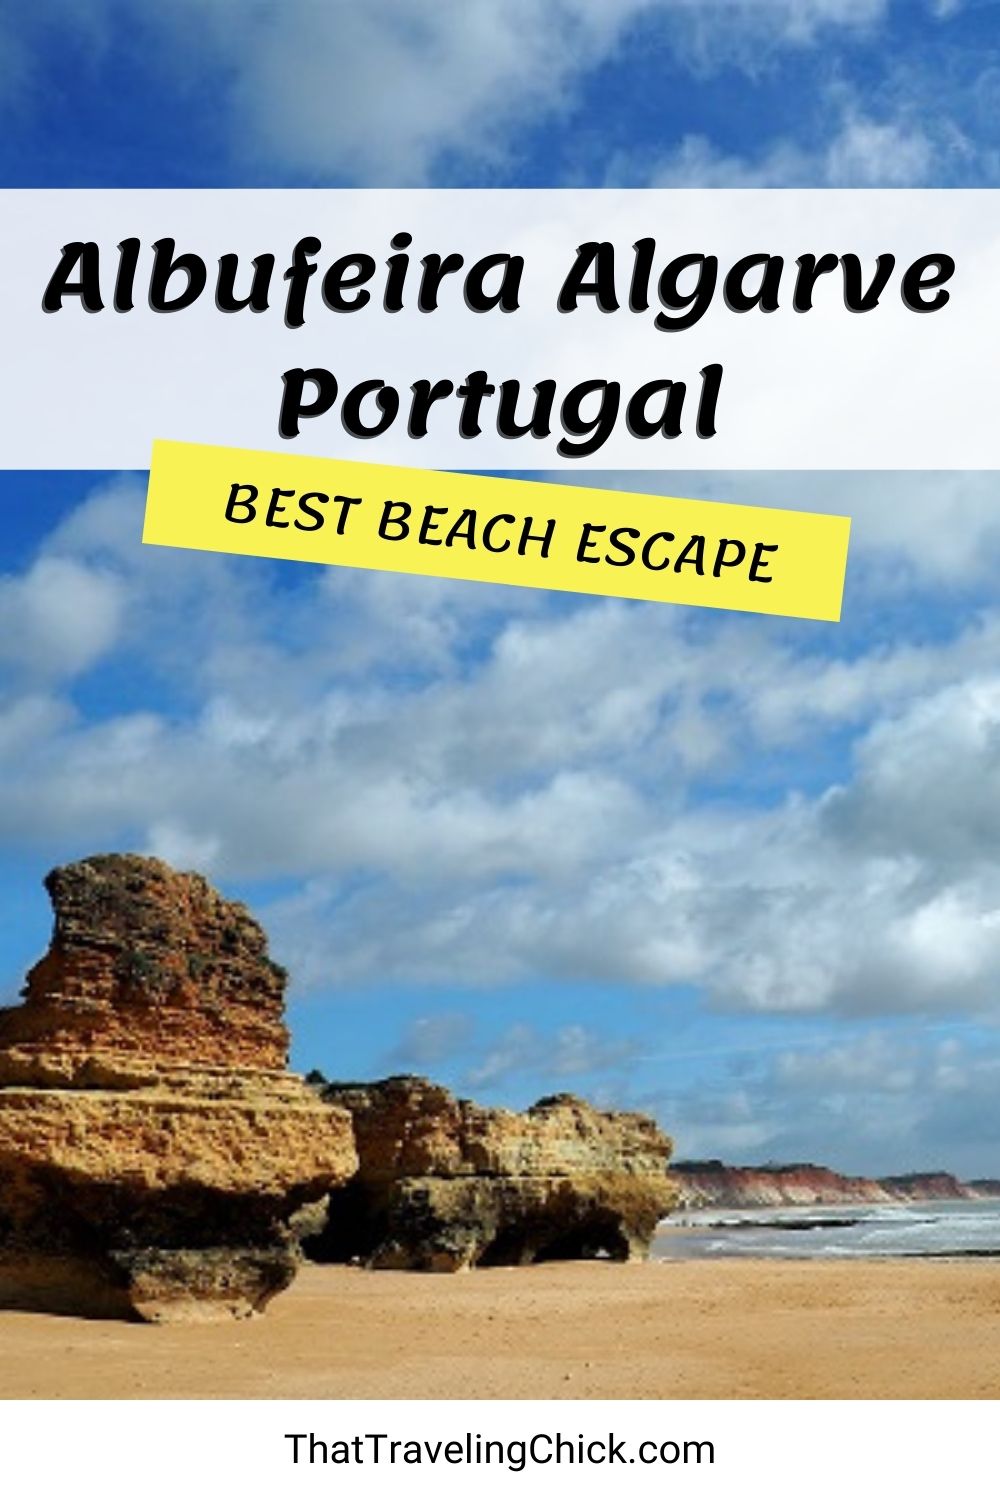 Albufeira Algarve Portugal